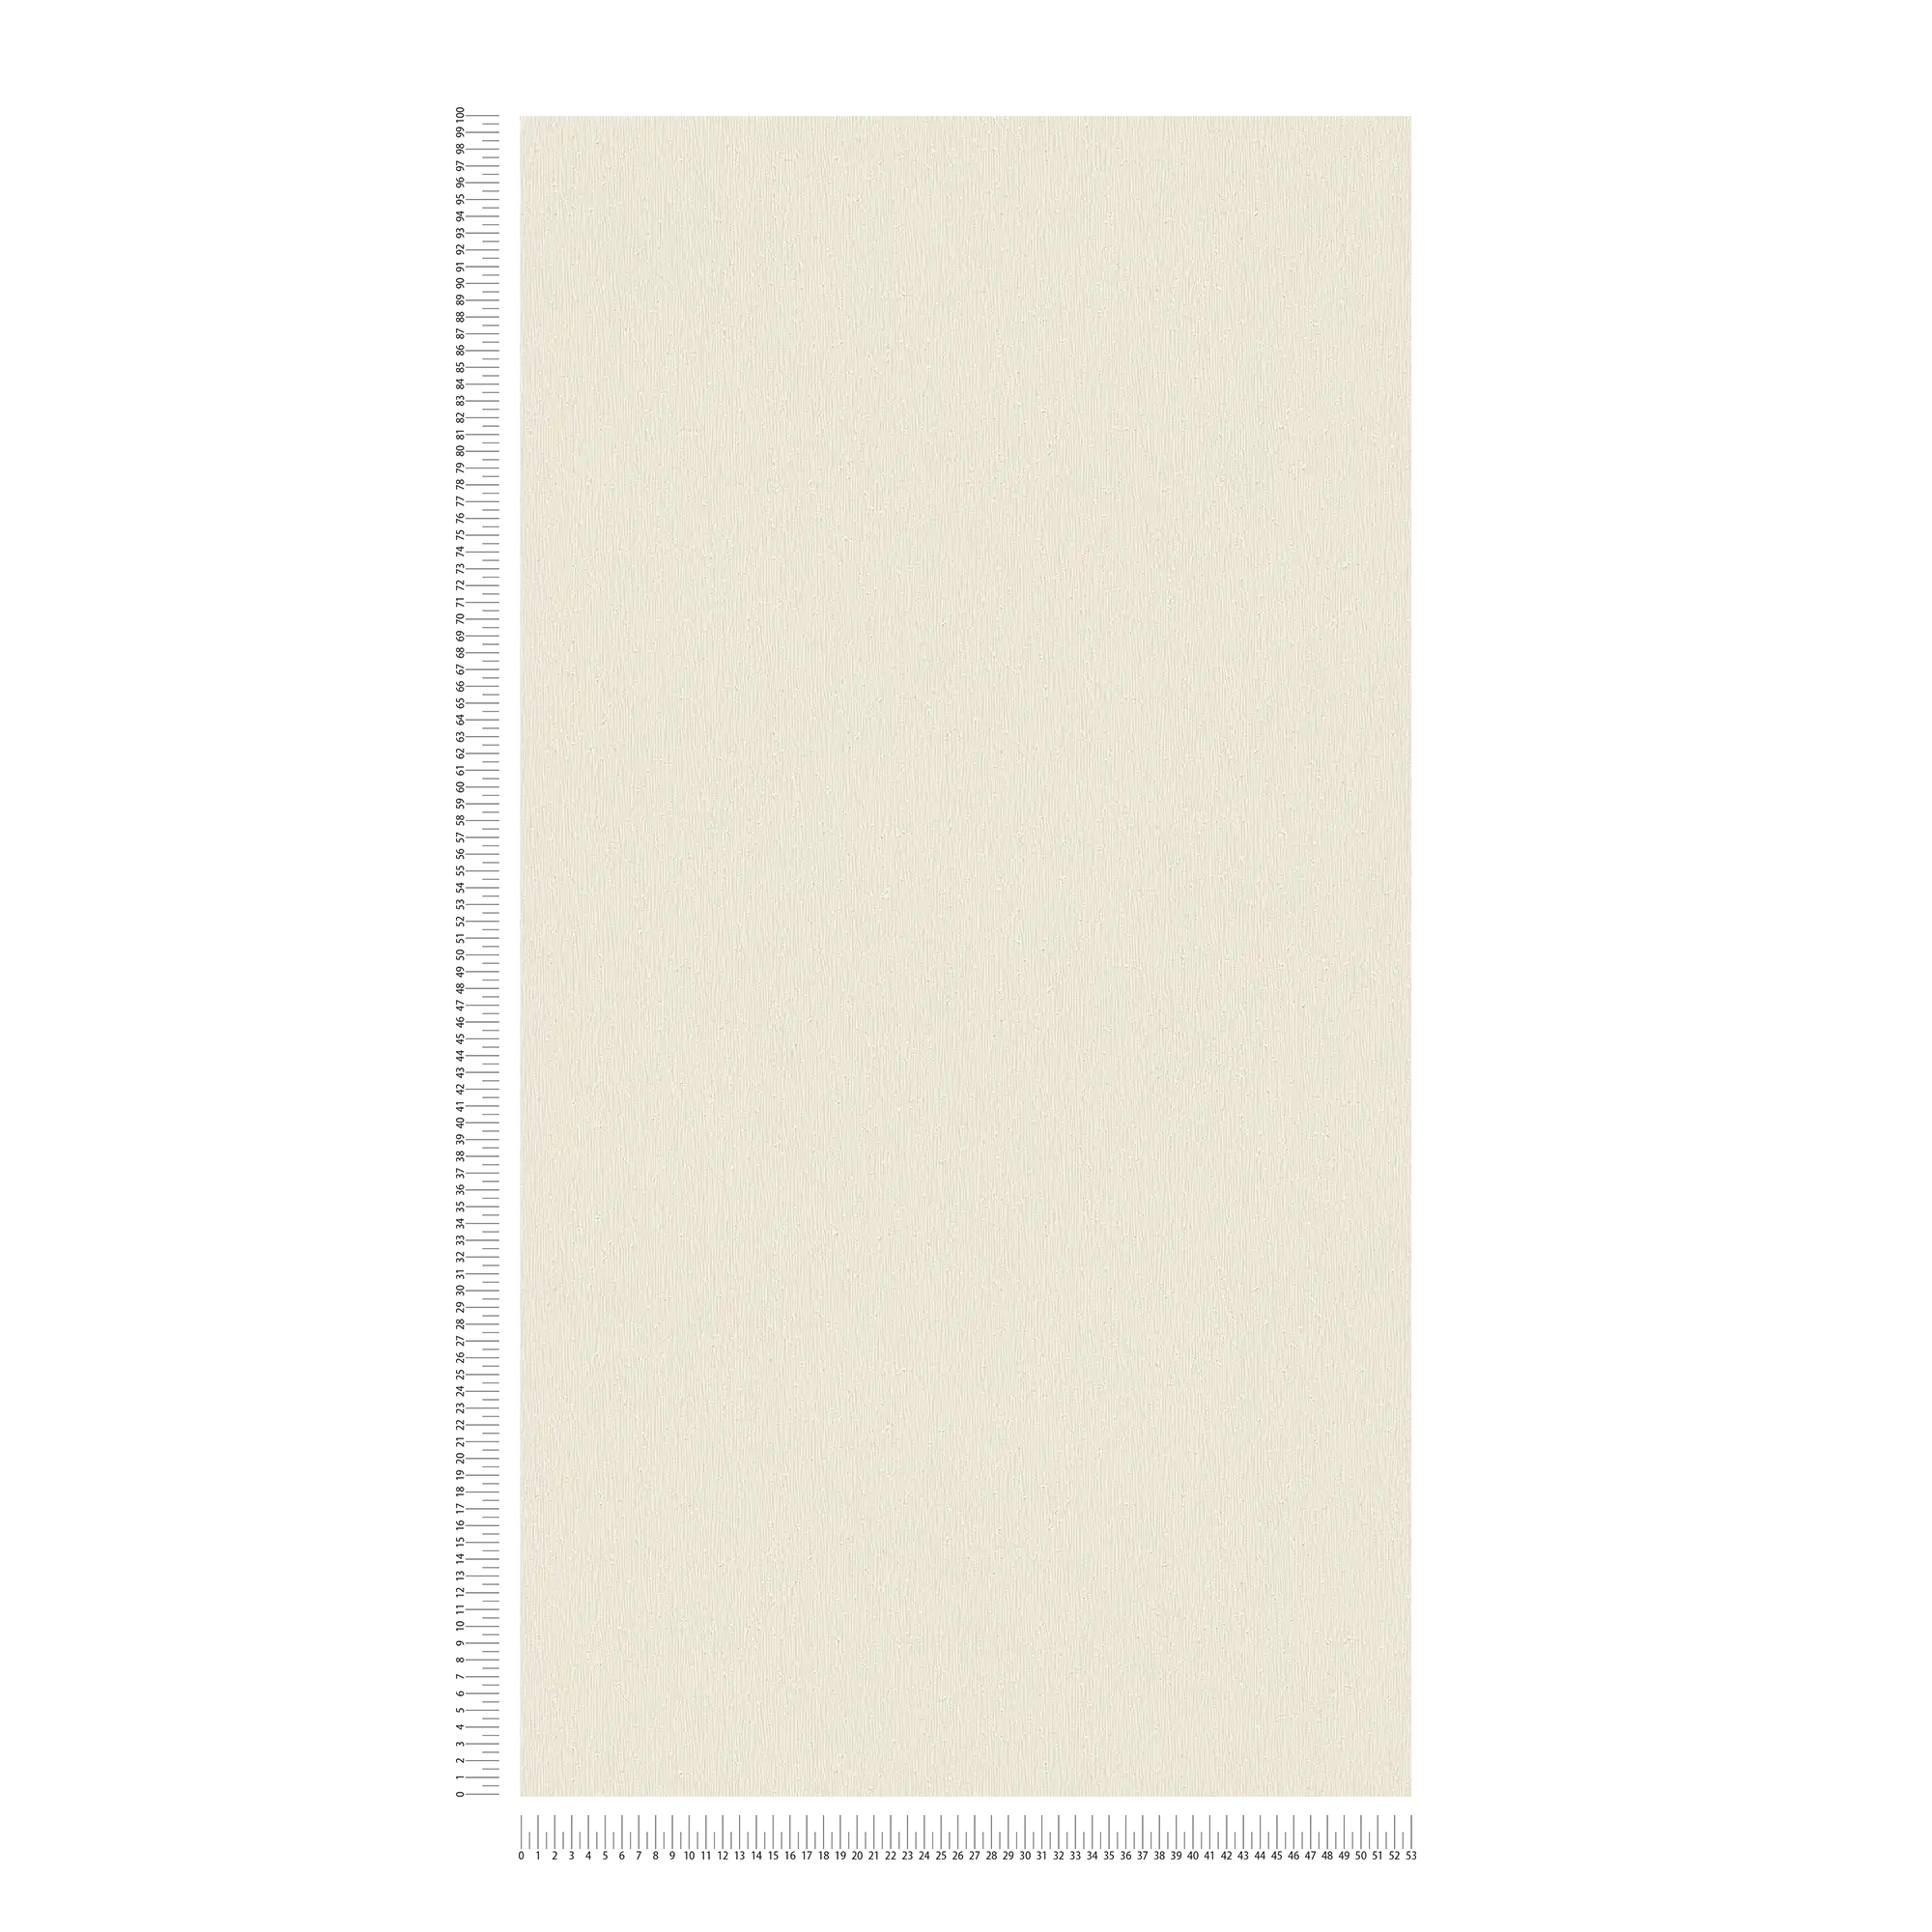             Papier peint intissé crème avec motif uni texturé - crème, blanc
        